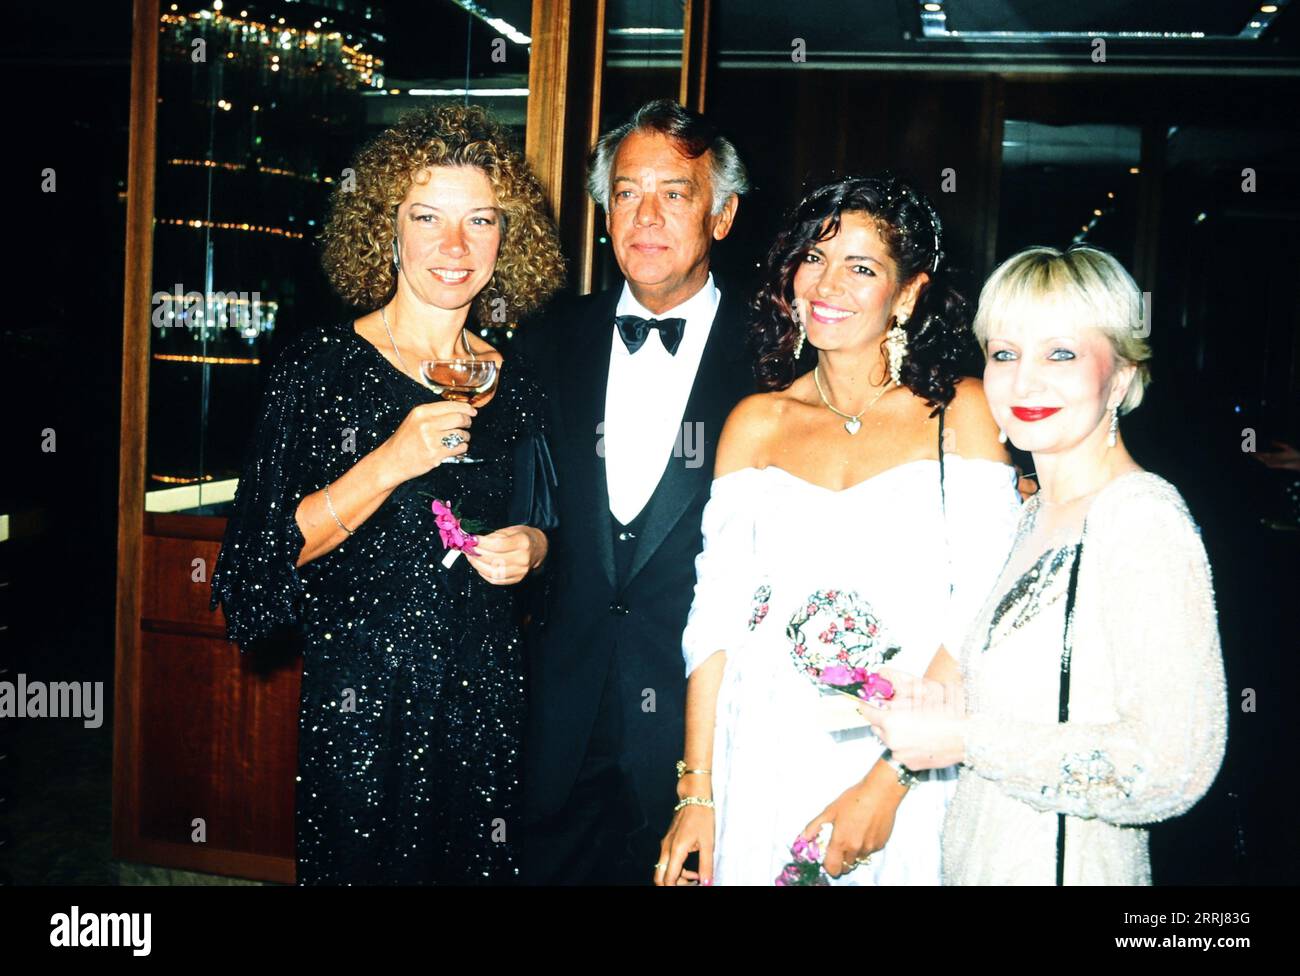 Evelyn Hamann, Klausjürgen Wussow, Yvonne Viehöfer (Ehefrau und Journalistin) und Susanne Beck, deutsche Schauspieler, Deutschland um 1993. Stock Photo